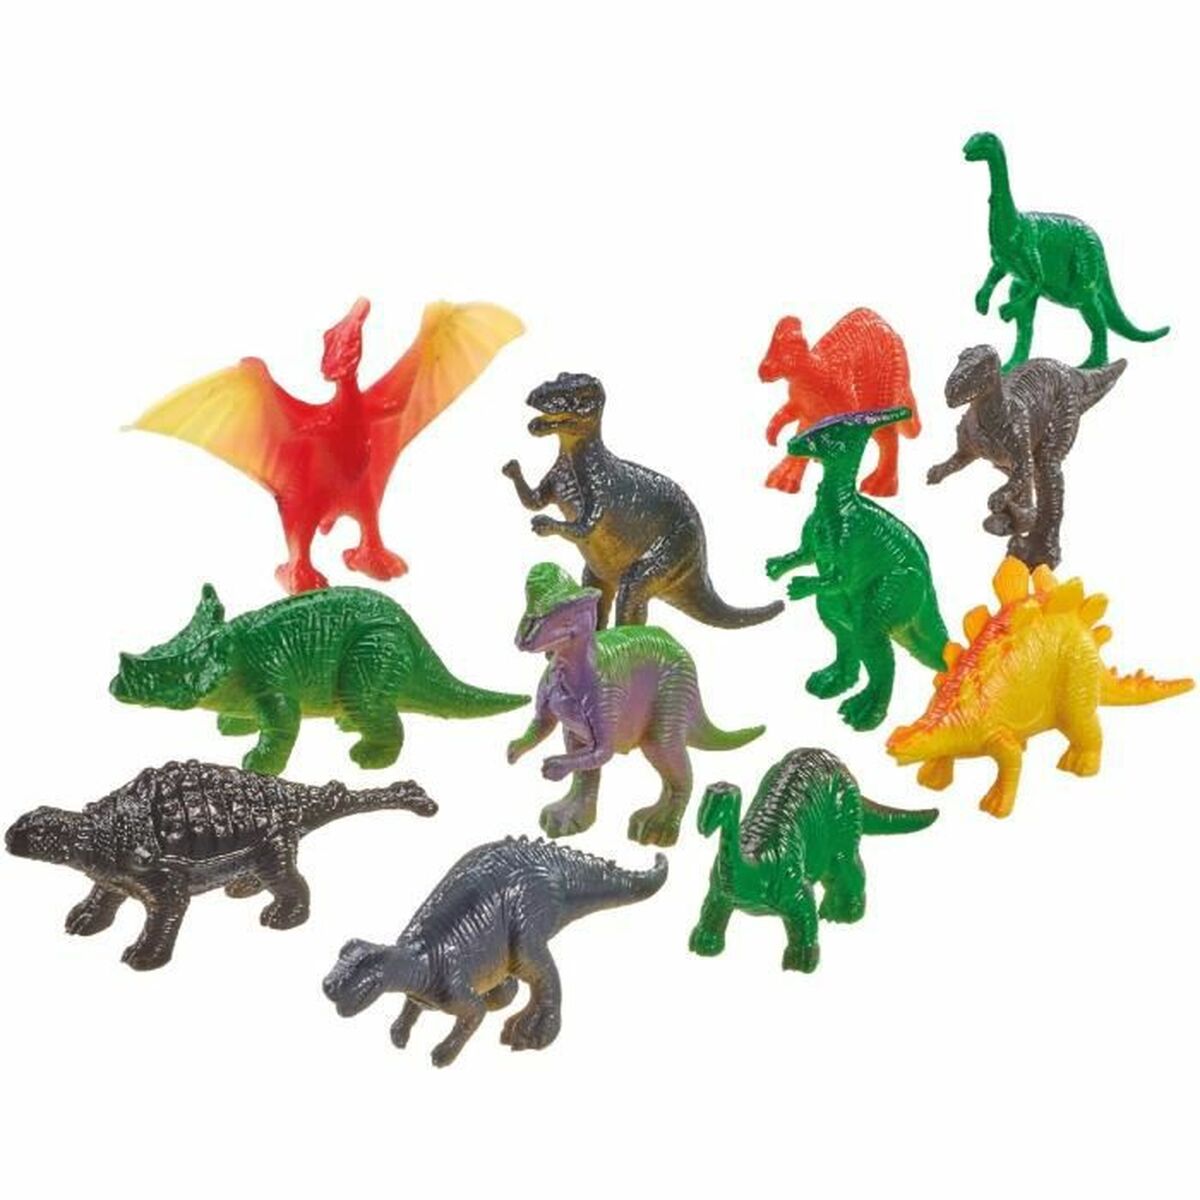 Puzzel Schmidt Spiele Dinosaurs Figuren 60 Onderdelen